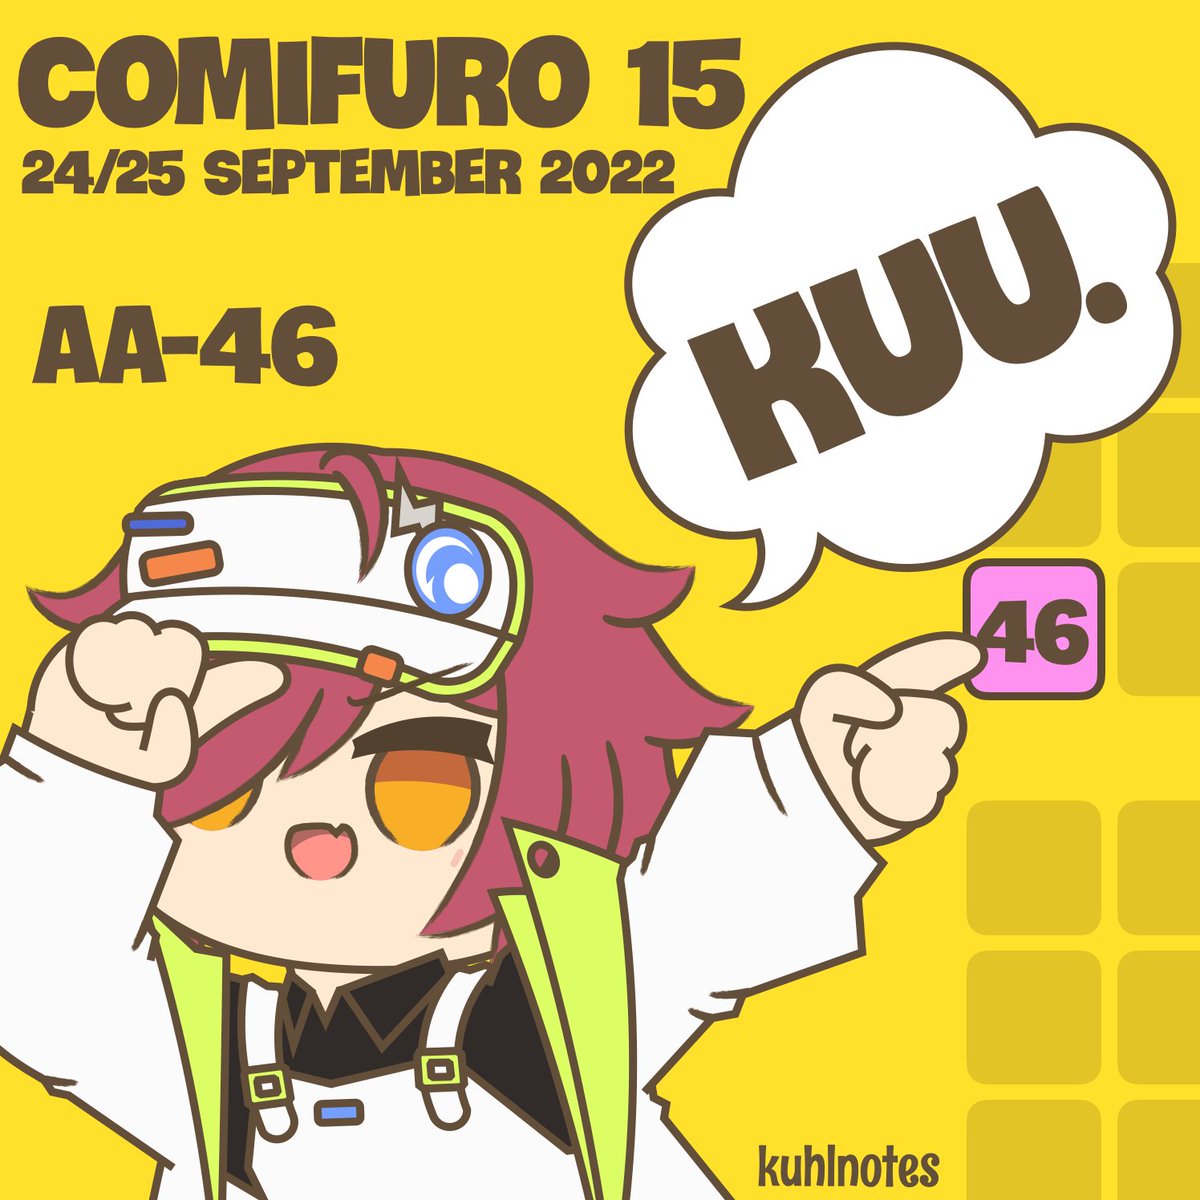 エクシア(アークナイツ) 「Hey guys! I'll be back in Comifuro 15 at」|Kuu.のイラスト